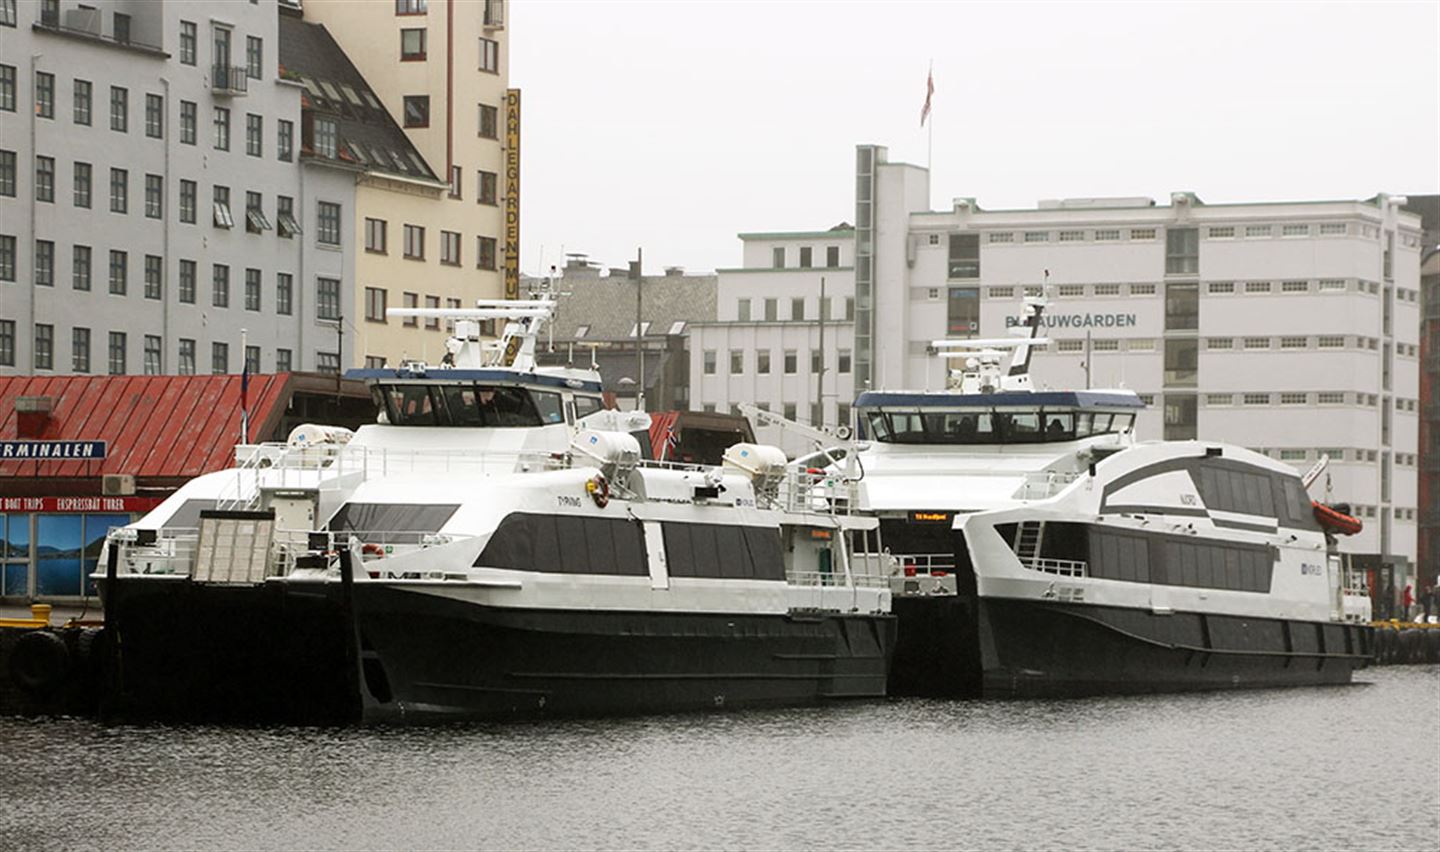 NULLUTSLEPP: Den første hurtigbåten i Vestland med nullutslepp blir planlagt for hydrogen. (foto: Bjarte Brask Eriksen/Vestland fylkeskommune)